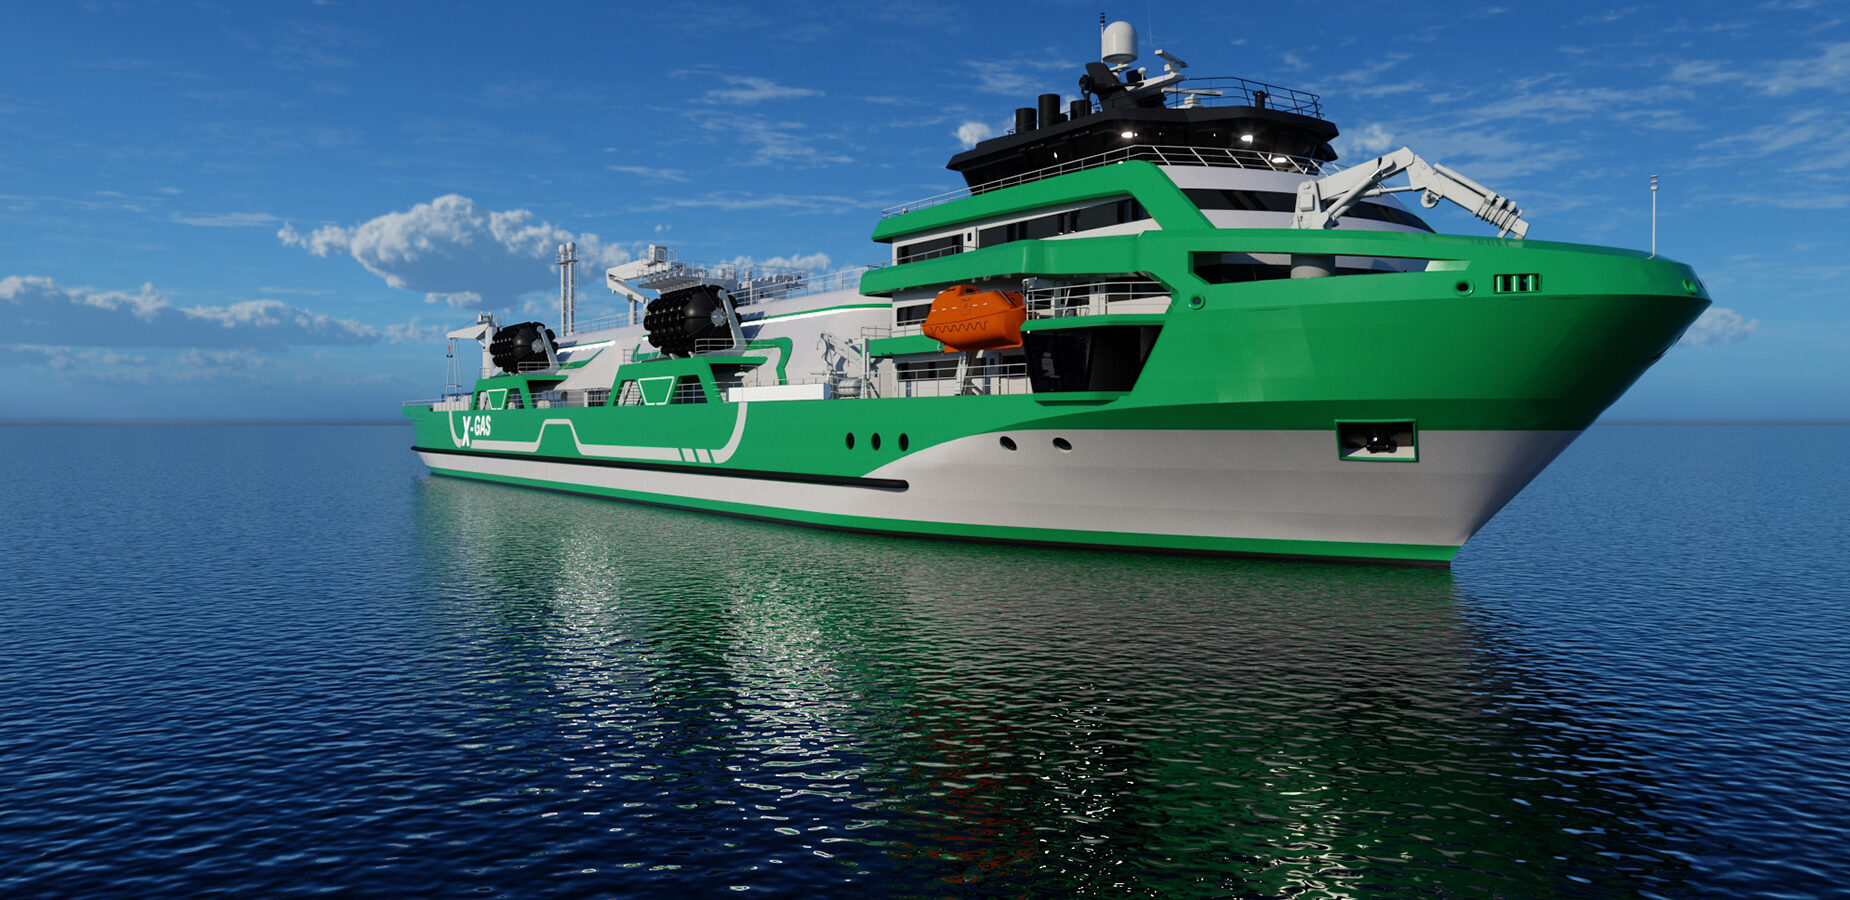 Denmark's Knud E. Hansen reveals new LNG bunkering vessel design